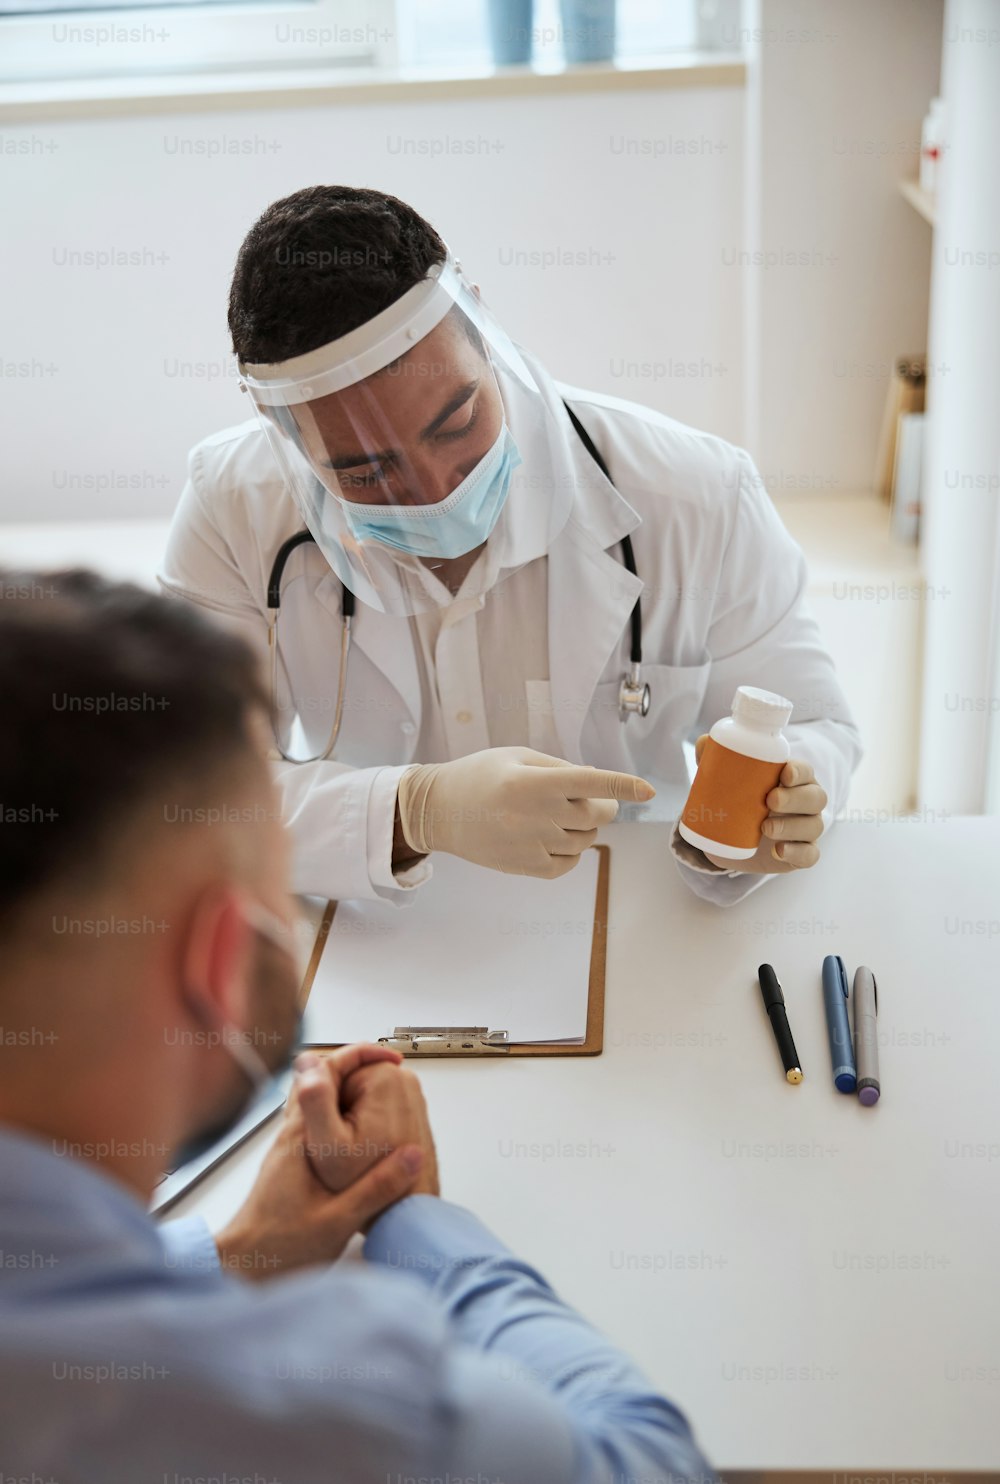 防護マスクと白い制服を着た自信に満ちた男性医師が診療所で処方箋について患者と話し合っている腰の肖像画